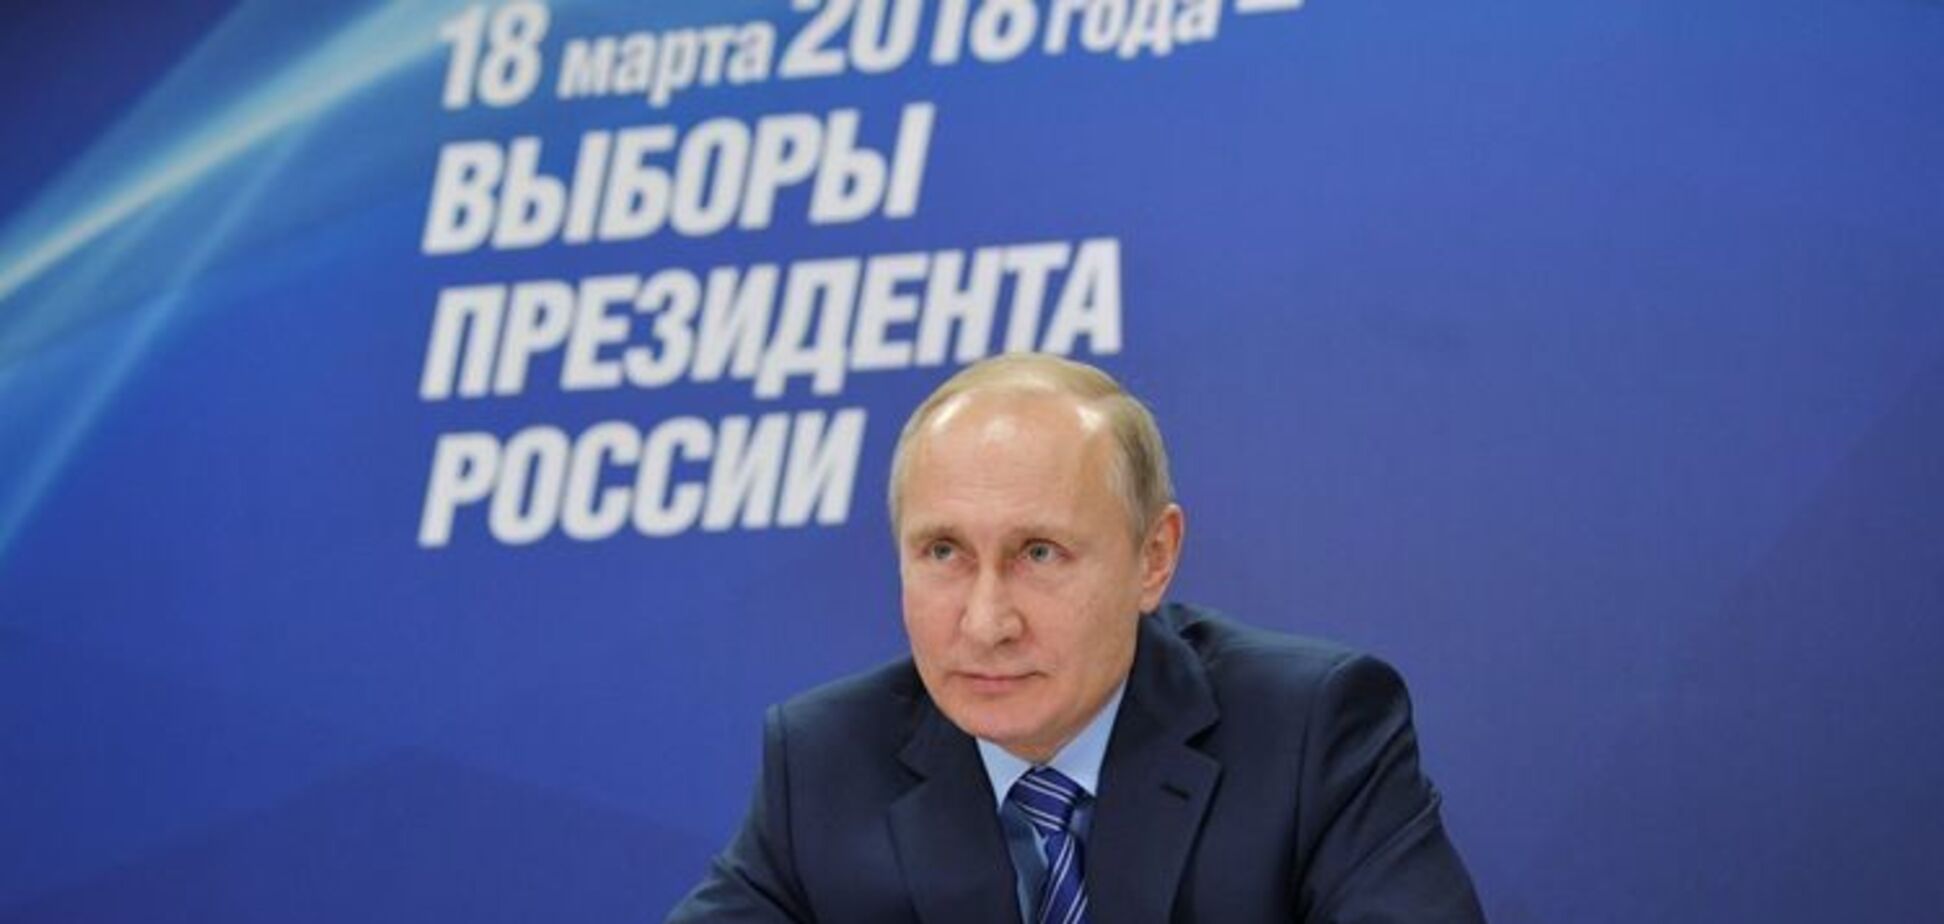 ''Путин соврал'': названы причины падения рейтингов президента РФ